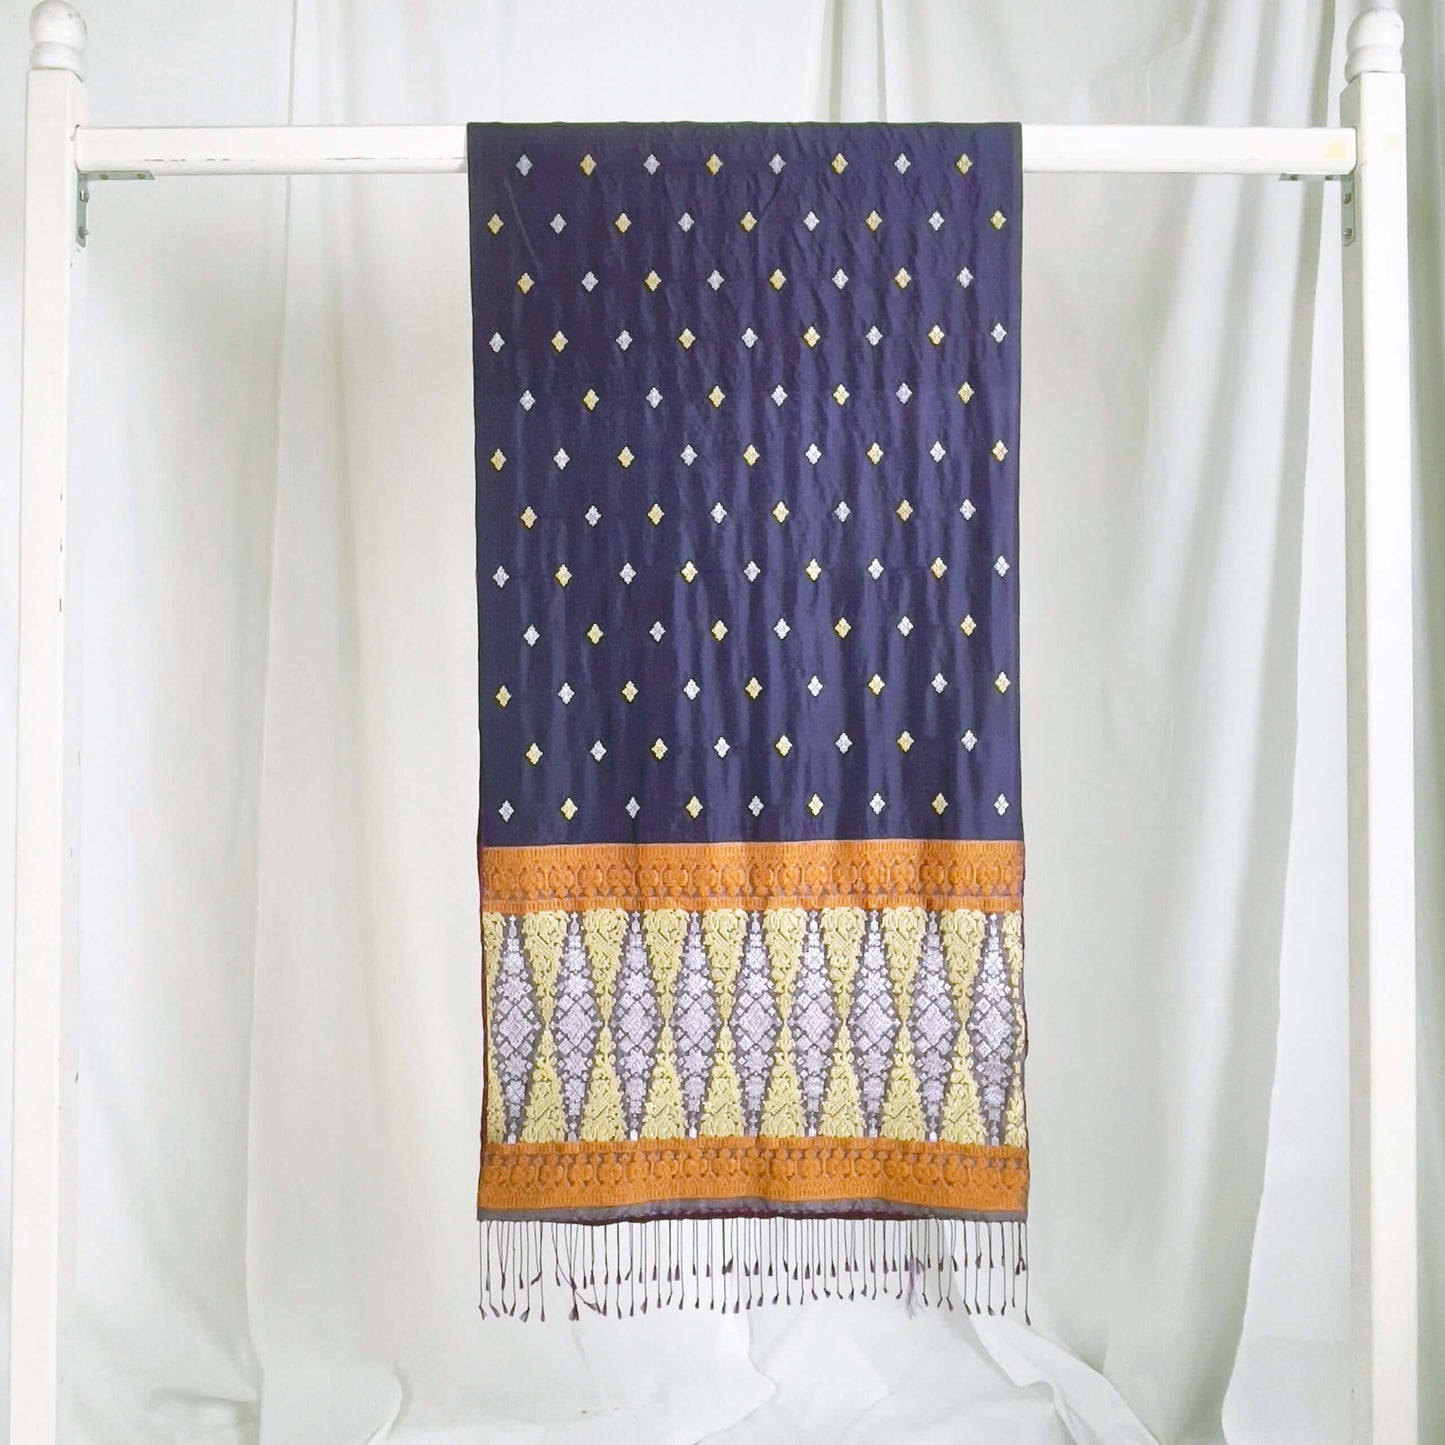 Indera Kayangan (Purple) handwoven silk songket shawl textile